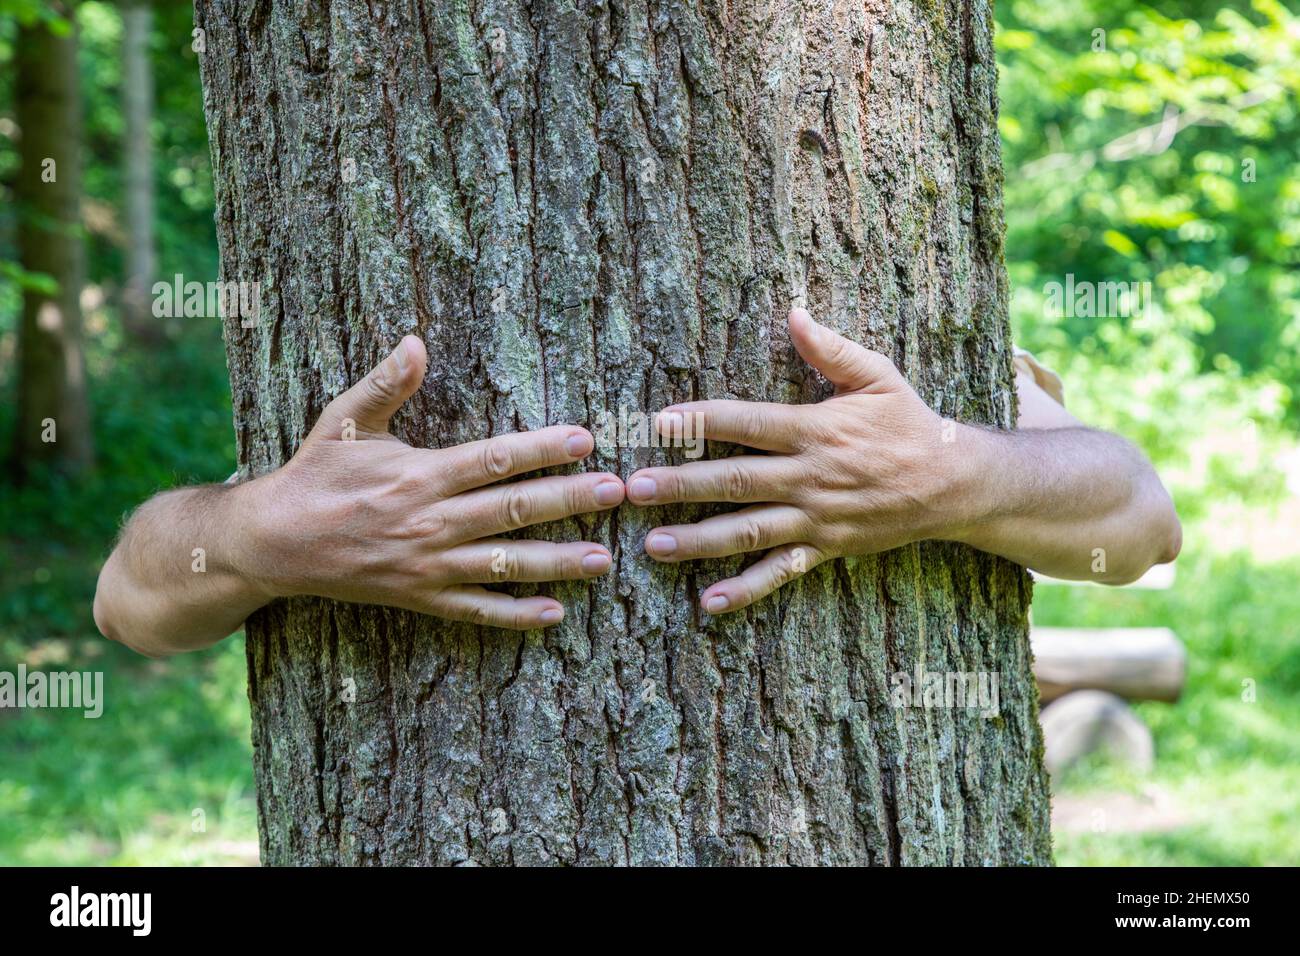 embrasando un árbol viejo da una buena sensación Foto de stock